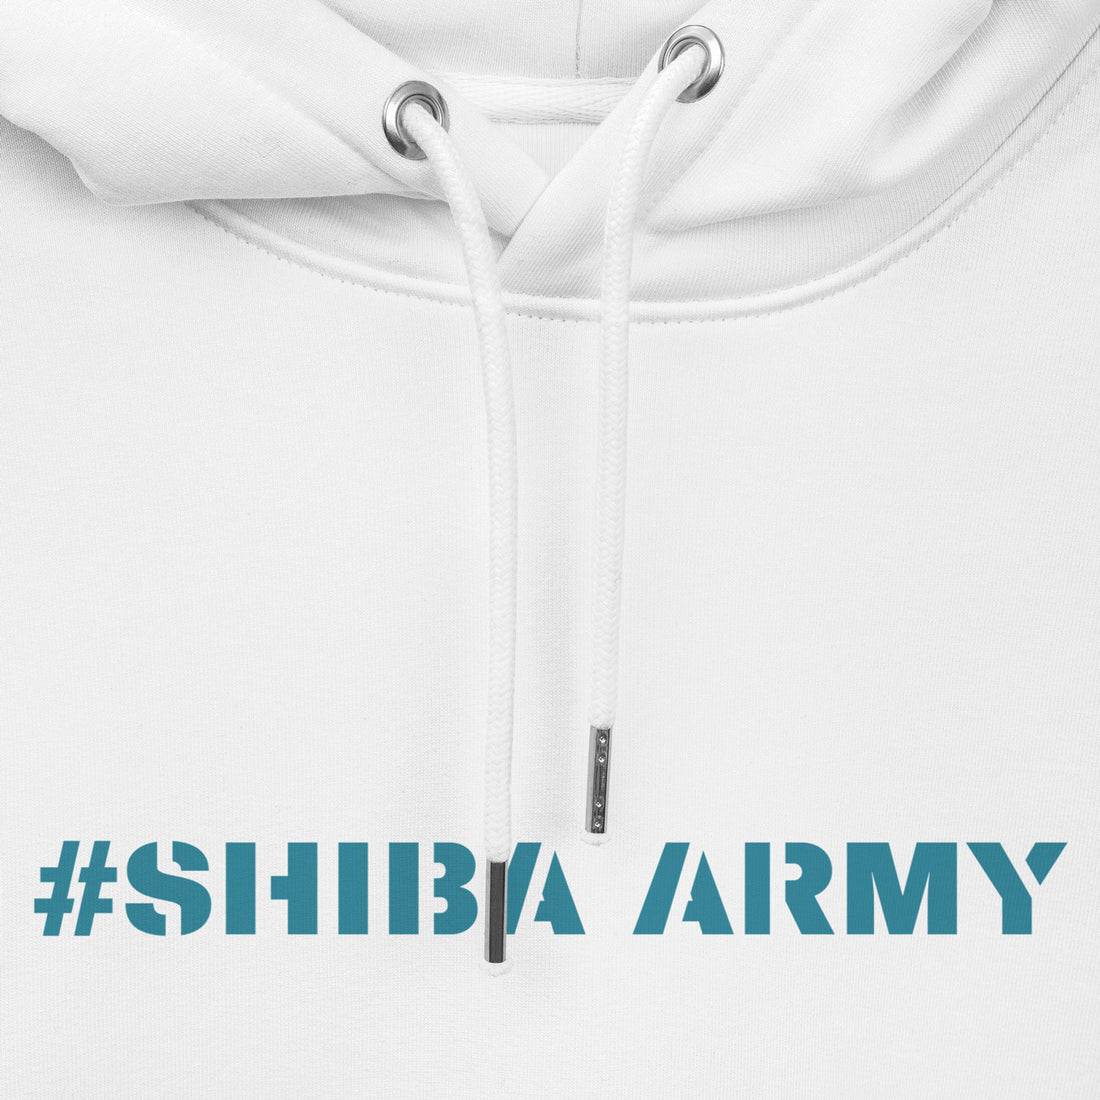 shiba army hoodie 